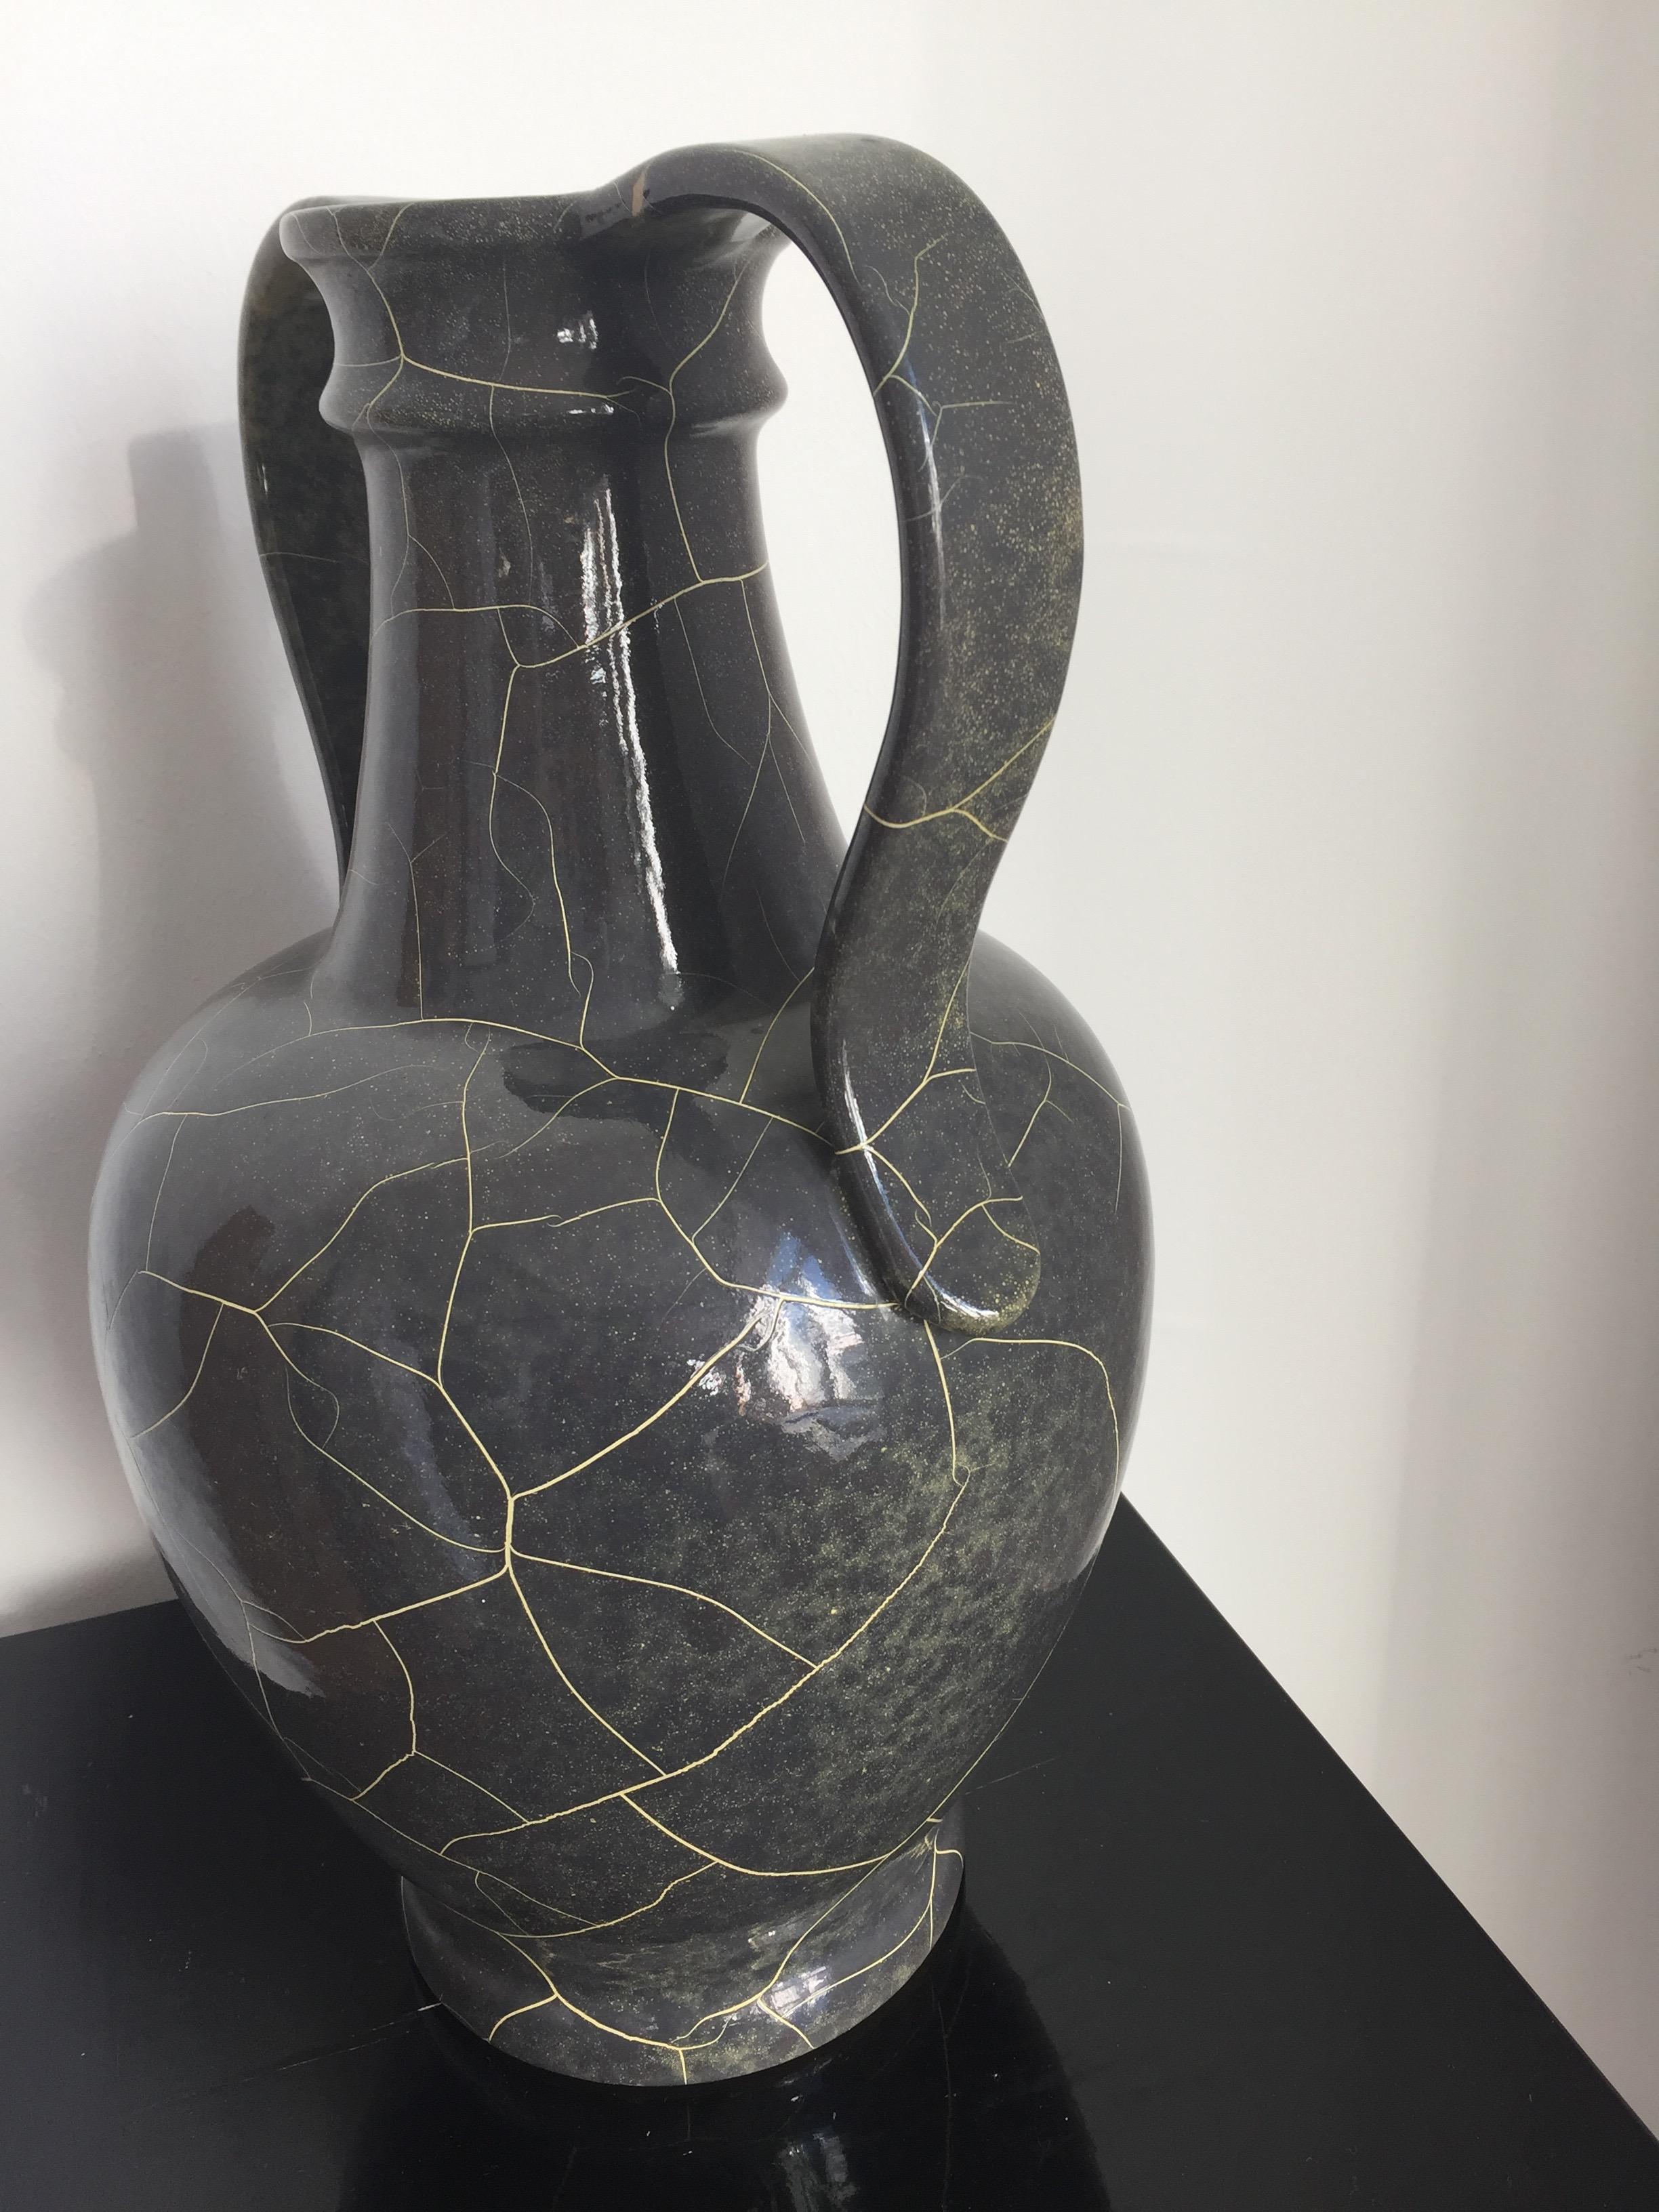 Rare pot en céramique de Richard Uhlemeyer, céramiste allemand,

Grand vase, belle glaçure en gris et primevère

Allemagne, années 1940, cachet sur le bord inférieur, très bon état, 

Dimensions : 44 cm de haut x 39 cm de diamètre.